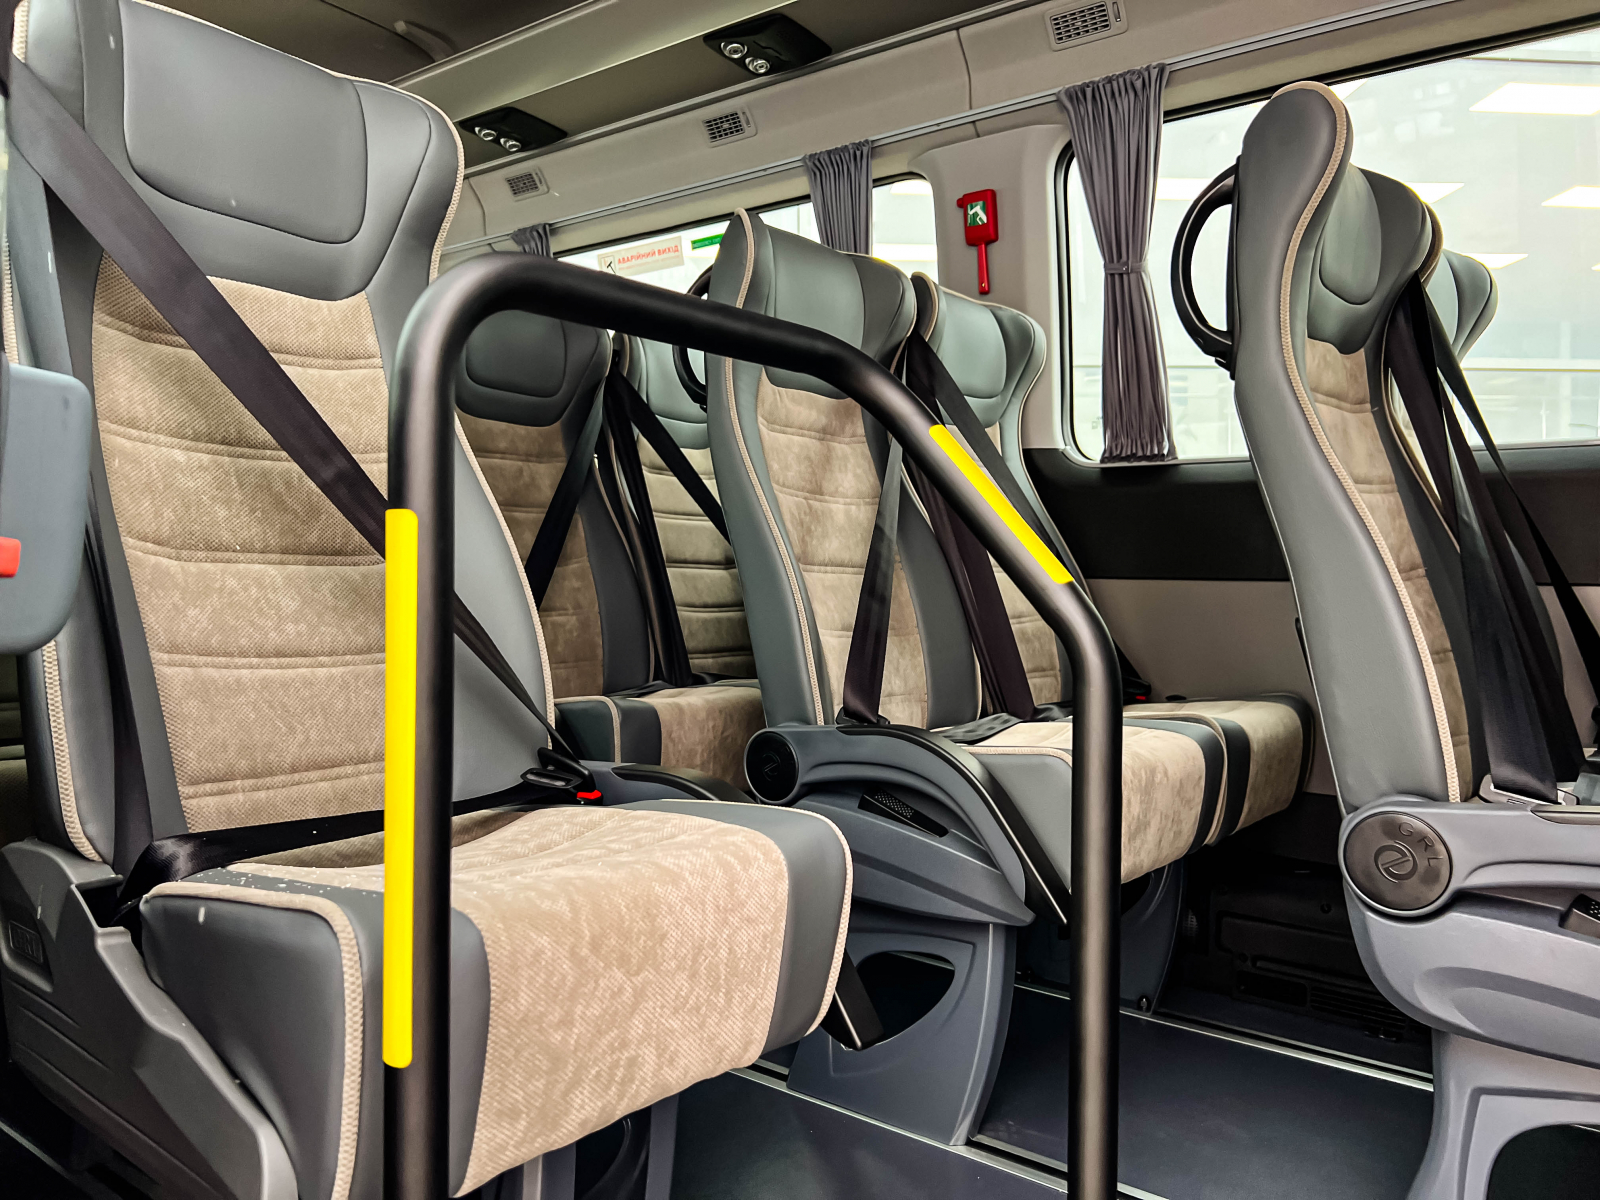 Hyundai H350 – мікроавтобус для комфортабельних пасажирських перевезень в наявності у автосалоні! | ВІК-Експо - фото 16